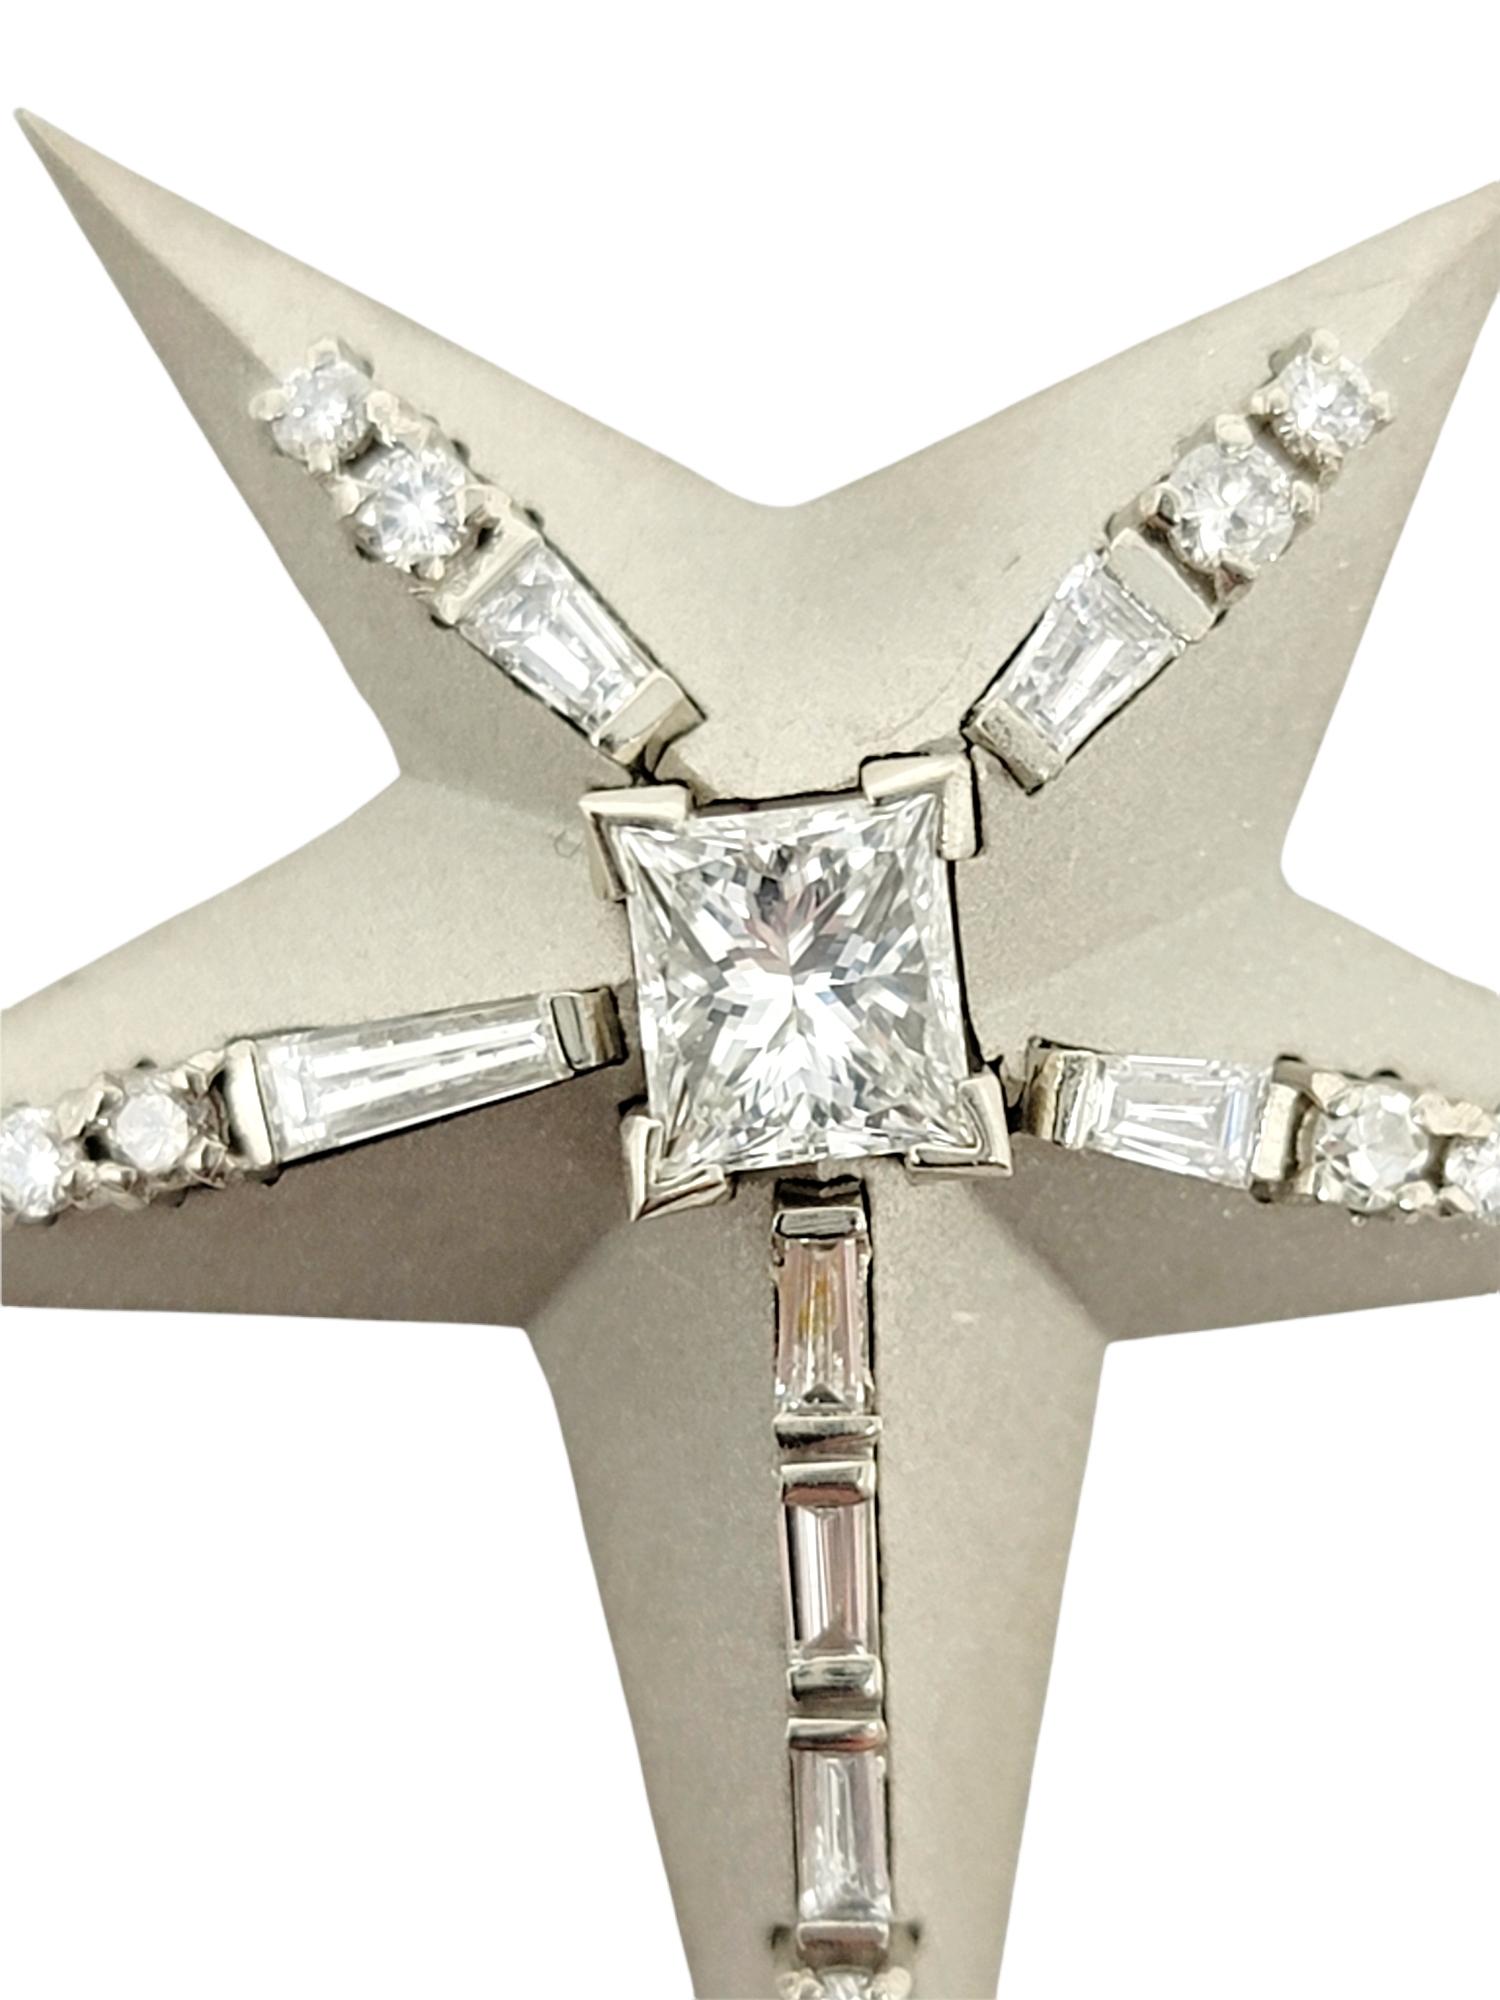 Außergewöhnliche, moderne Diamant-Starburst-Brosche / -Anhänger mit einzigartigem Sandstrahl-Finish.

Metall: 14 Weißgold
Verschluss: Scharnierstift oder Bügel
Natürliche Diamanten: 1.16 ctw 
Diamantschliffe: Prinzessinnen- und